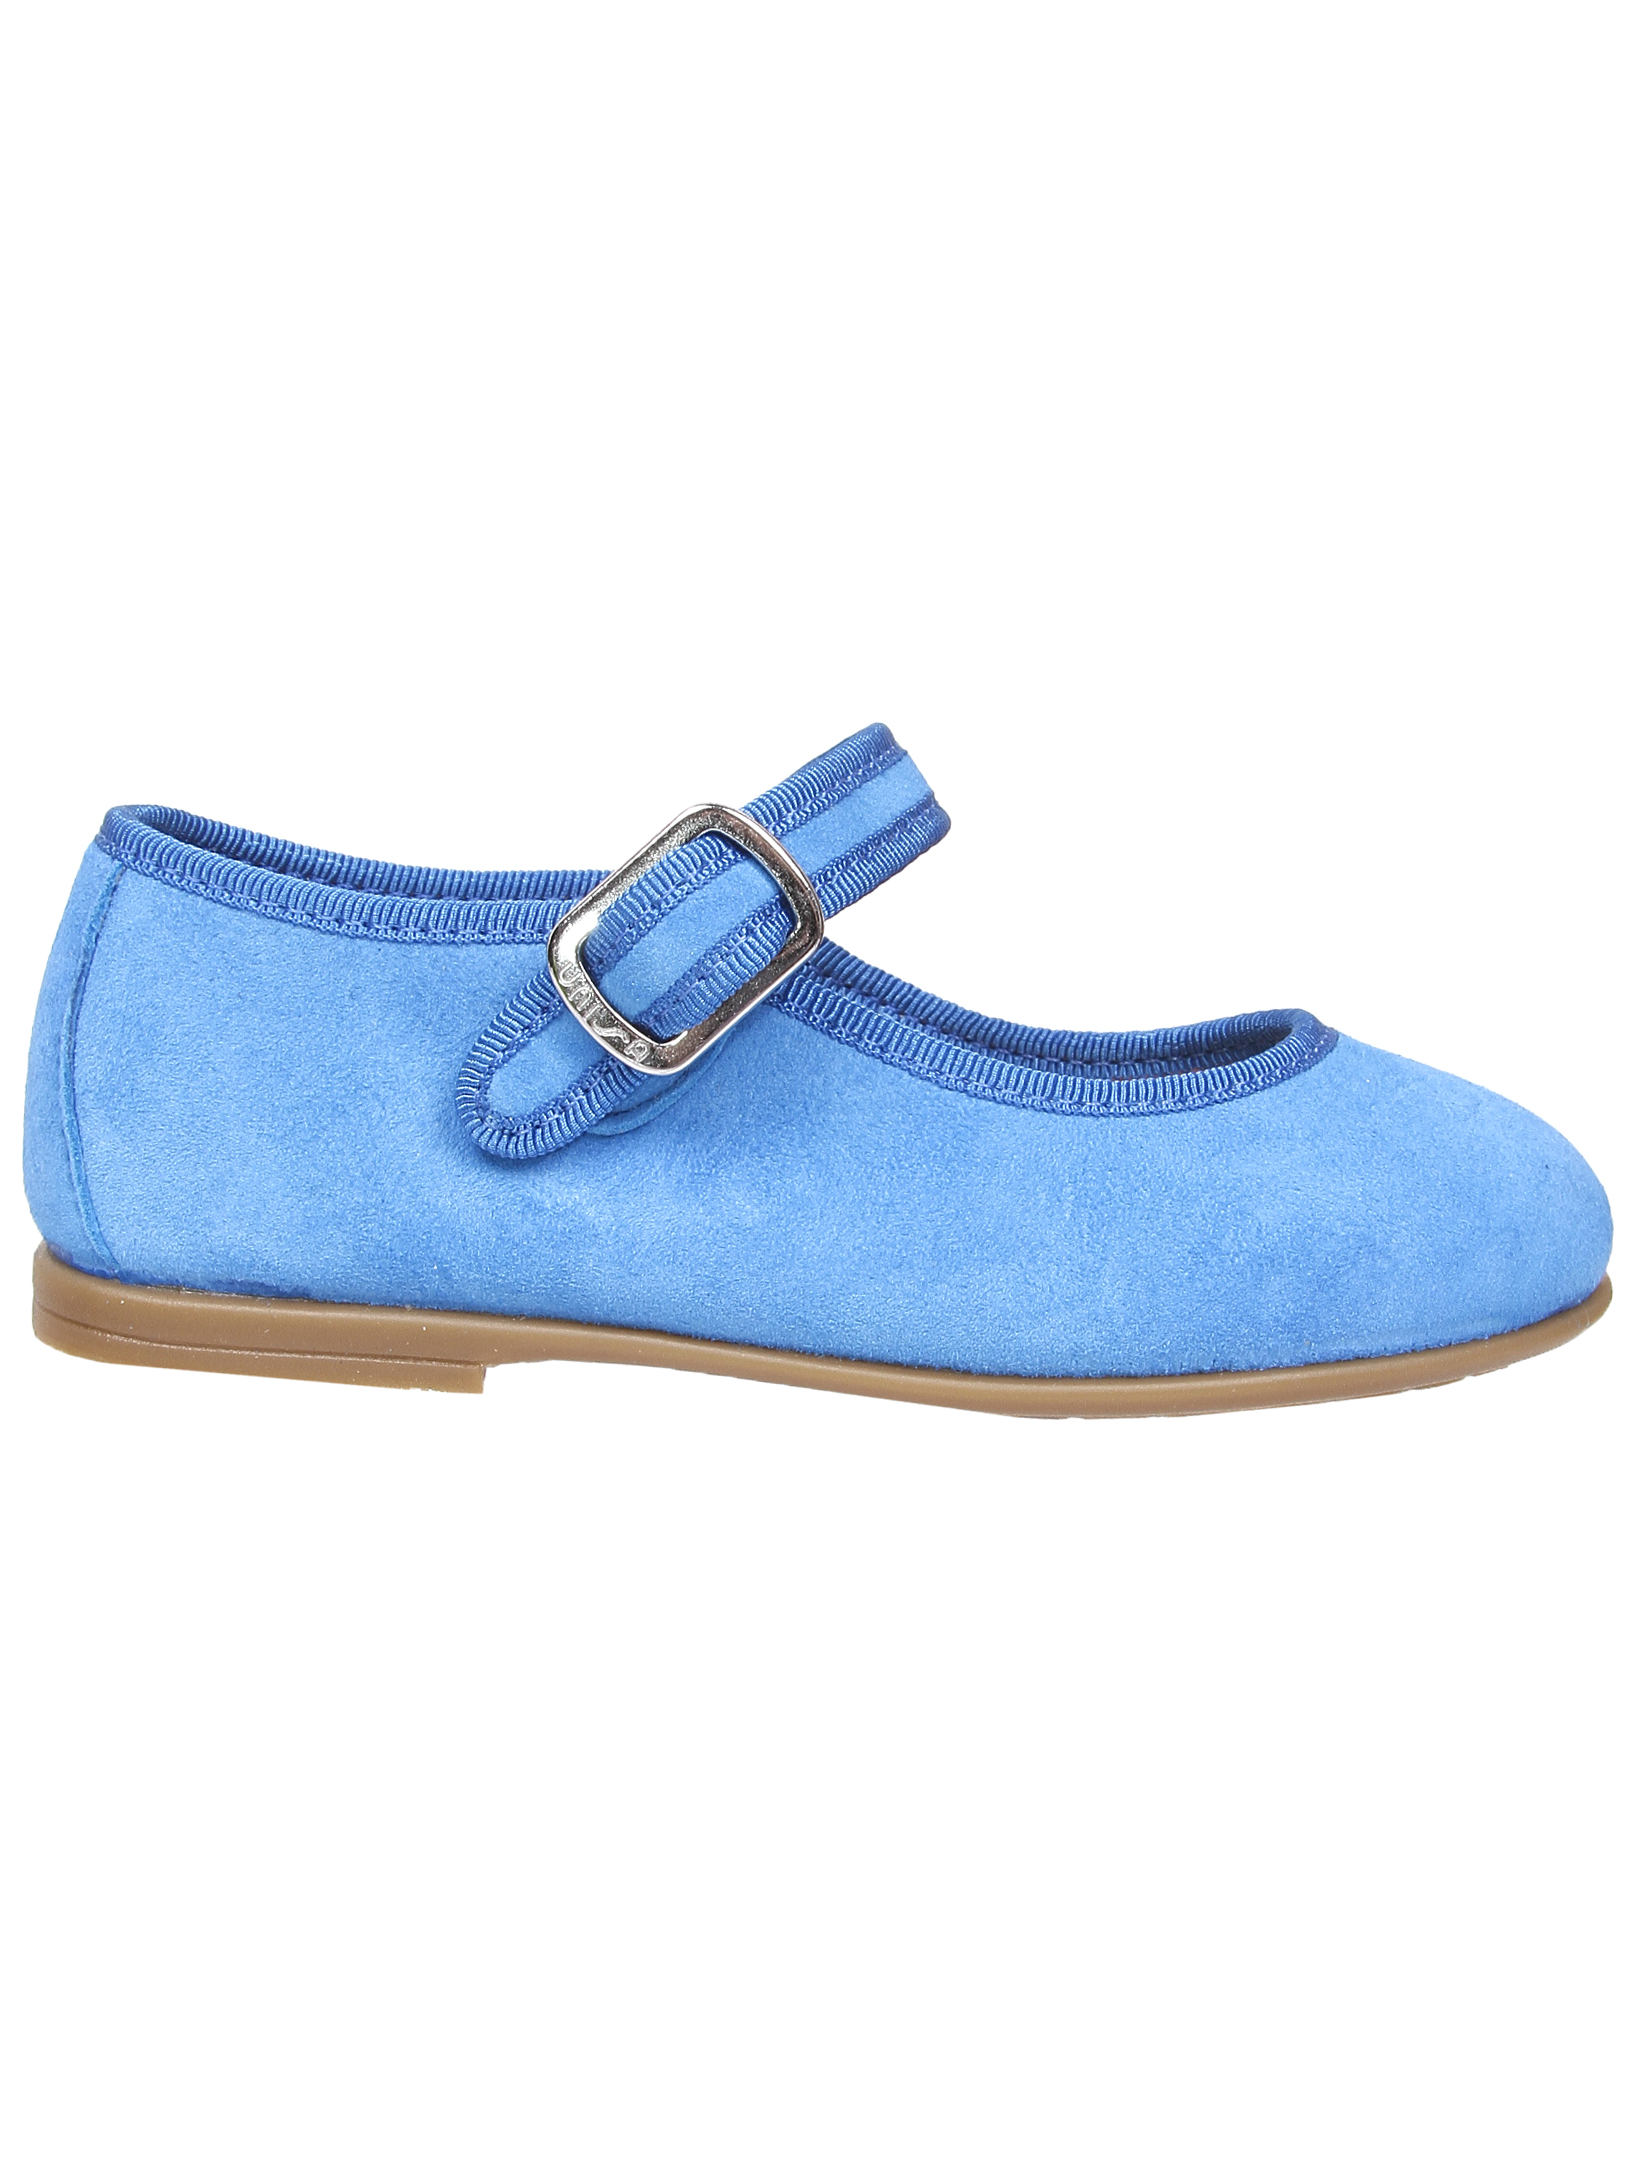 Туфли UNISA 1952860, цвет голубой, размер 28 2011509970013 - фото 3